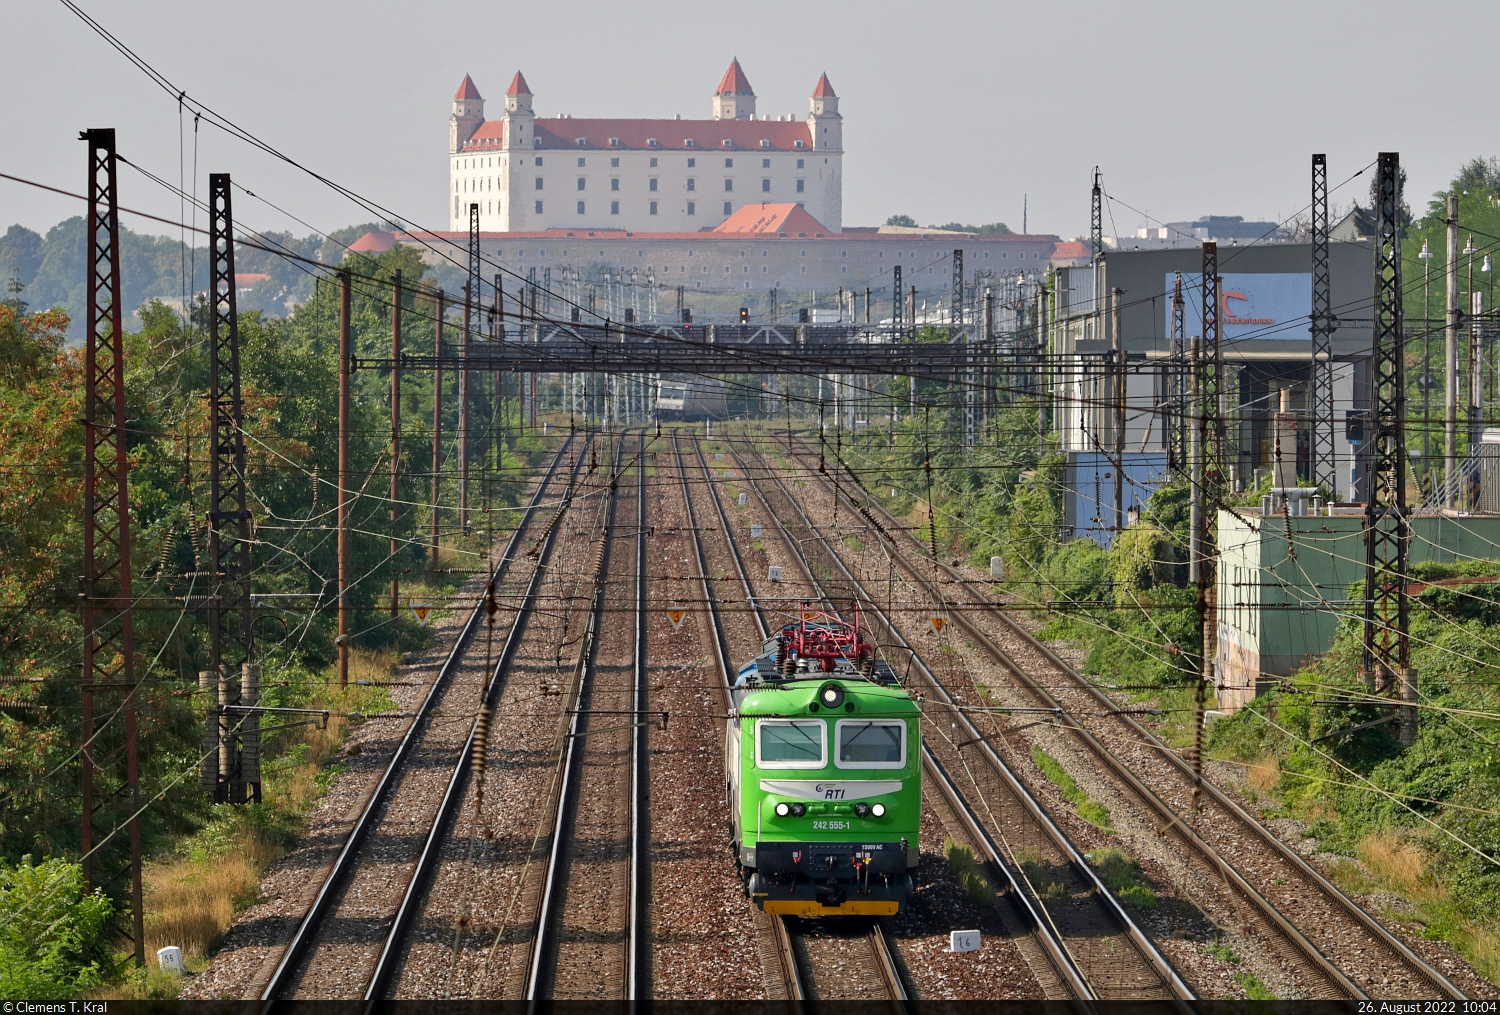 242 555-1 durchquert die slowakische Hauptstadt in östlicher Richtung und schleppt die hier kaum sichtbare 742 026-8 hinter sich her.
Tele-Aufnahme von der Brücke Kyjevská in Bratislava (SK).

🧰 Railtrans International a.s. (RTI)
🕓 26.8.2022 | 10:04 Uhr